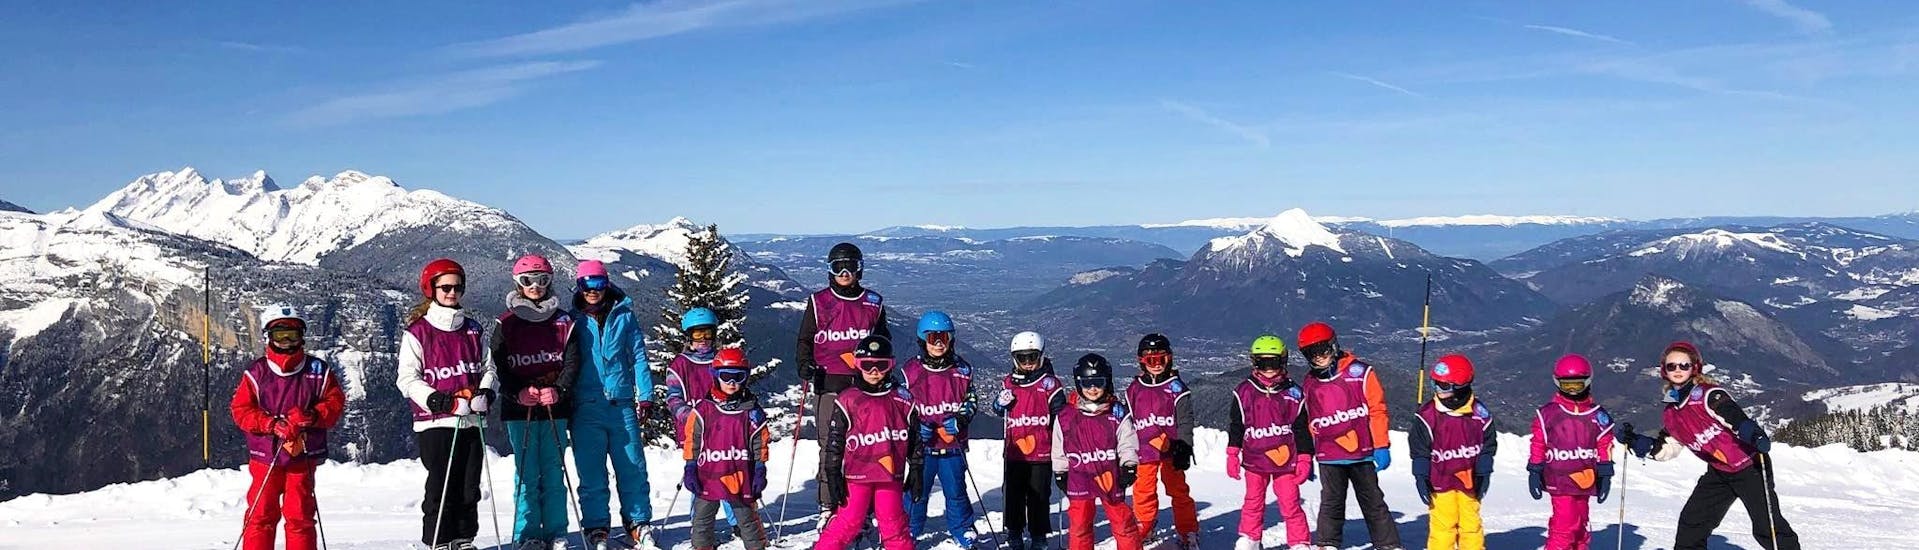 Skilessen voor Kinderen (5-15 jaar) in Flaine.